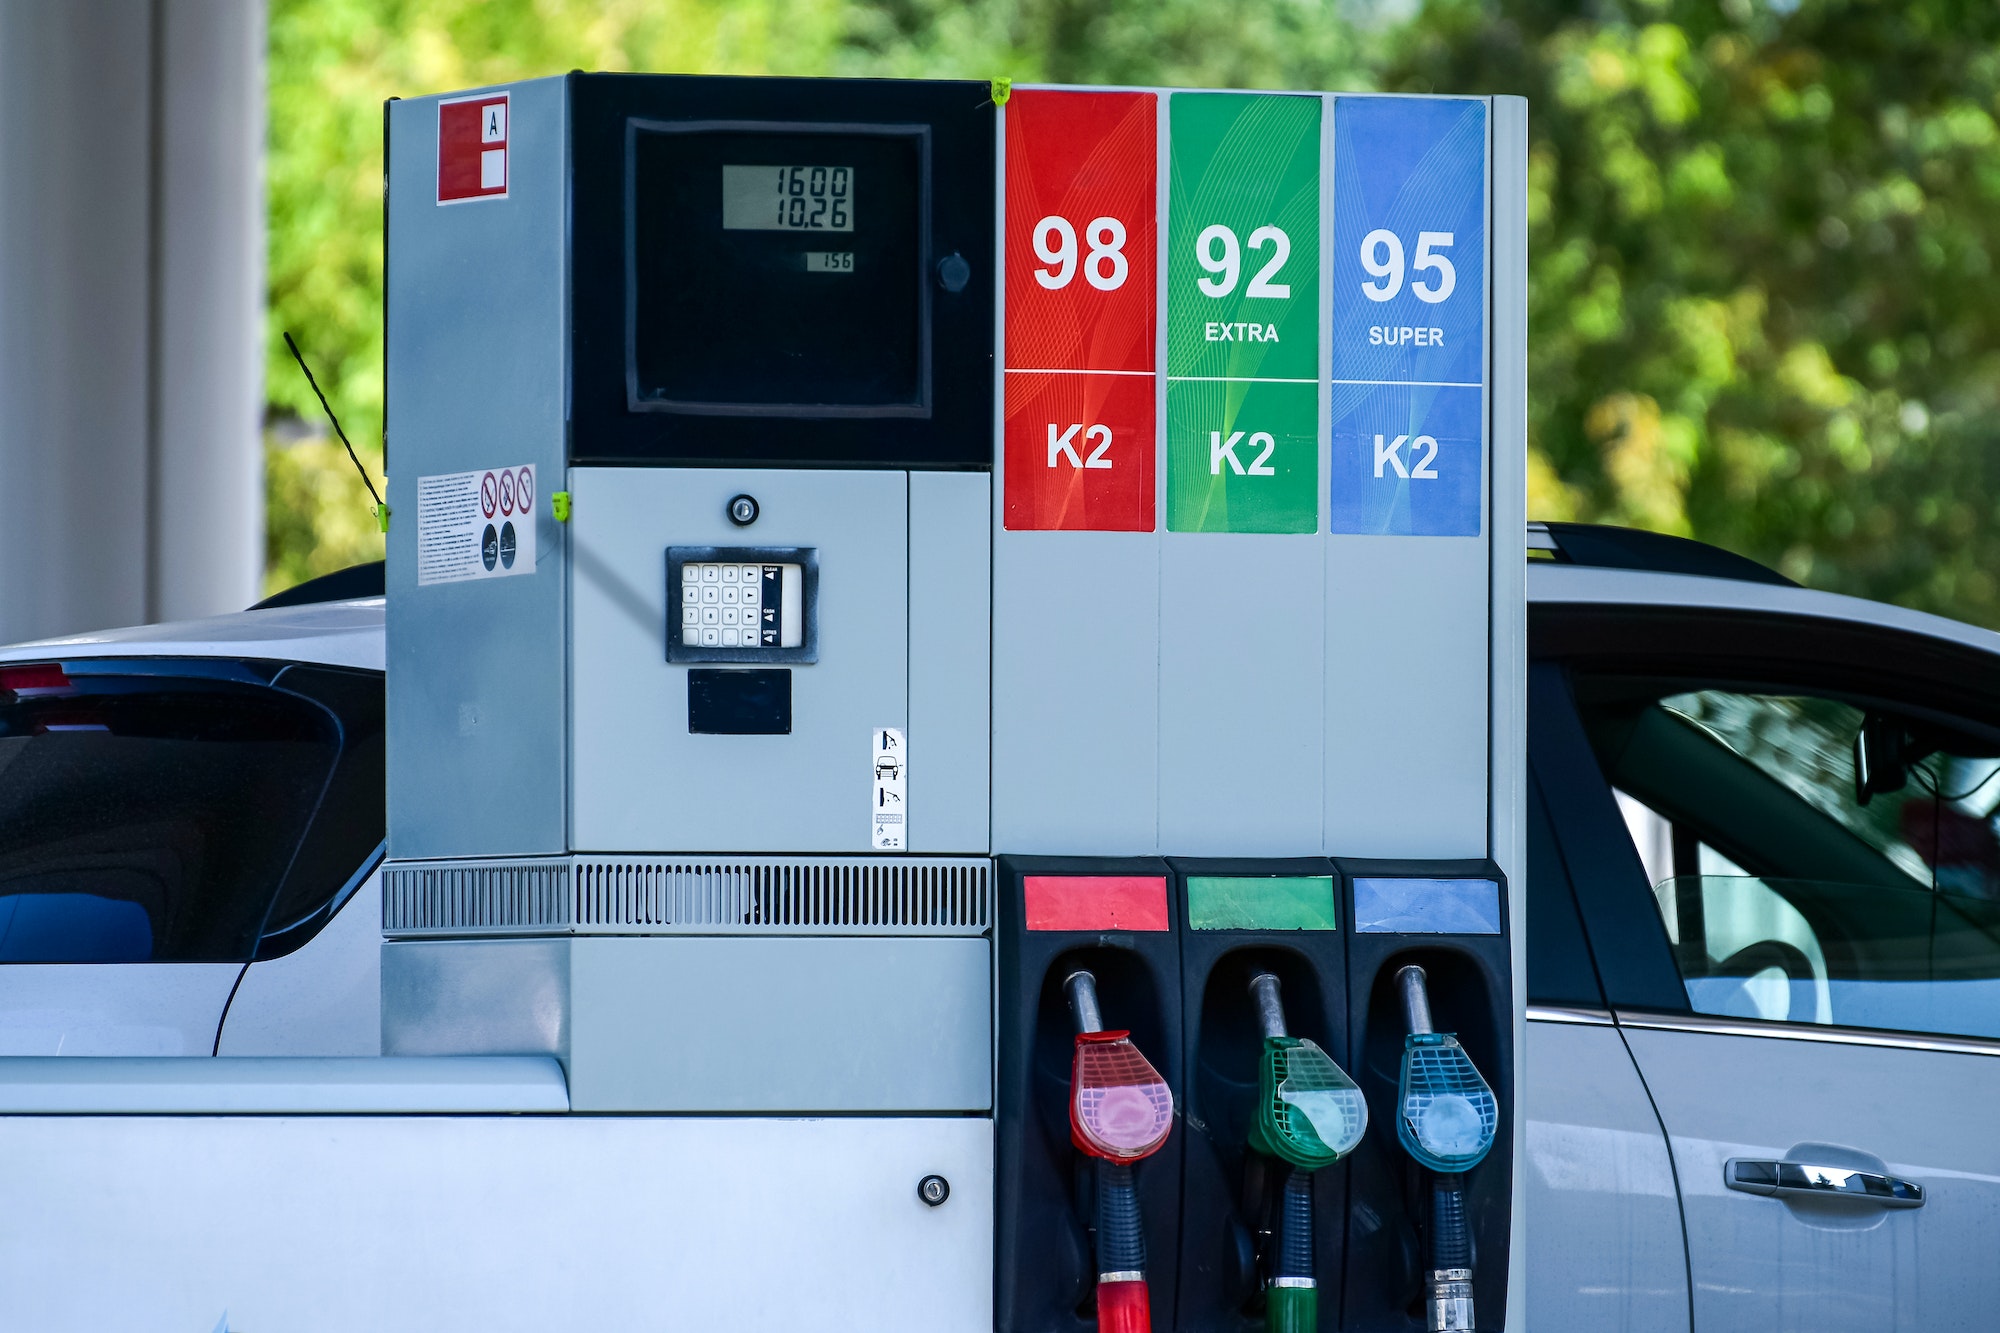 Gasolina vieja en el depósito: ¿después de cuánto caduca?